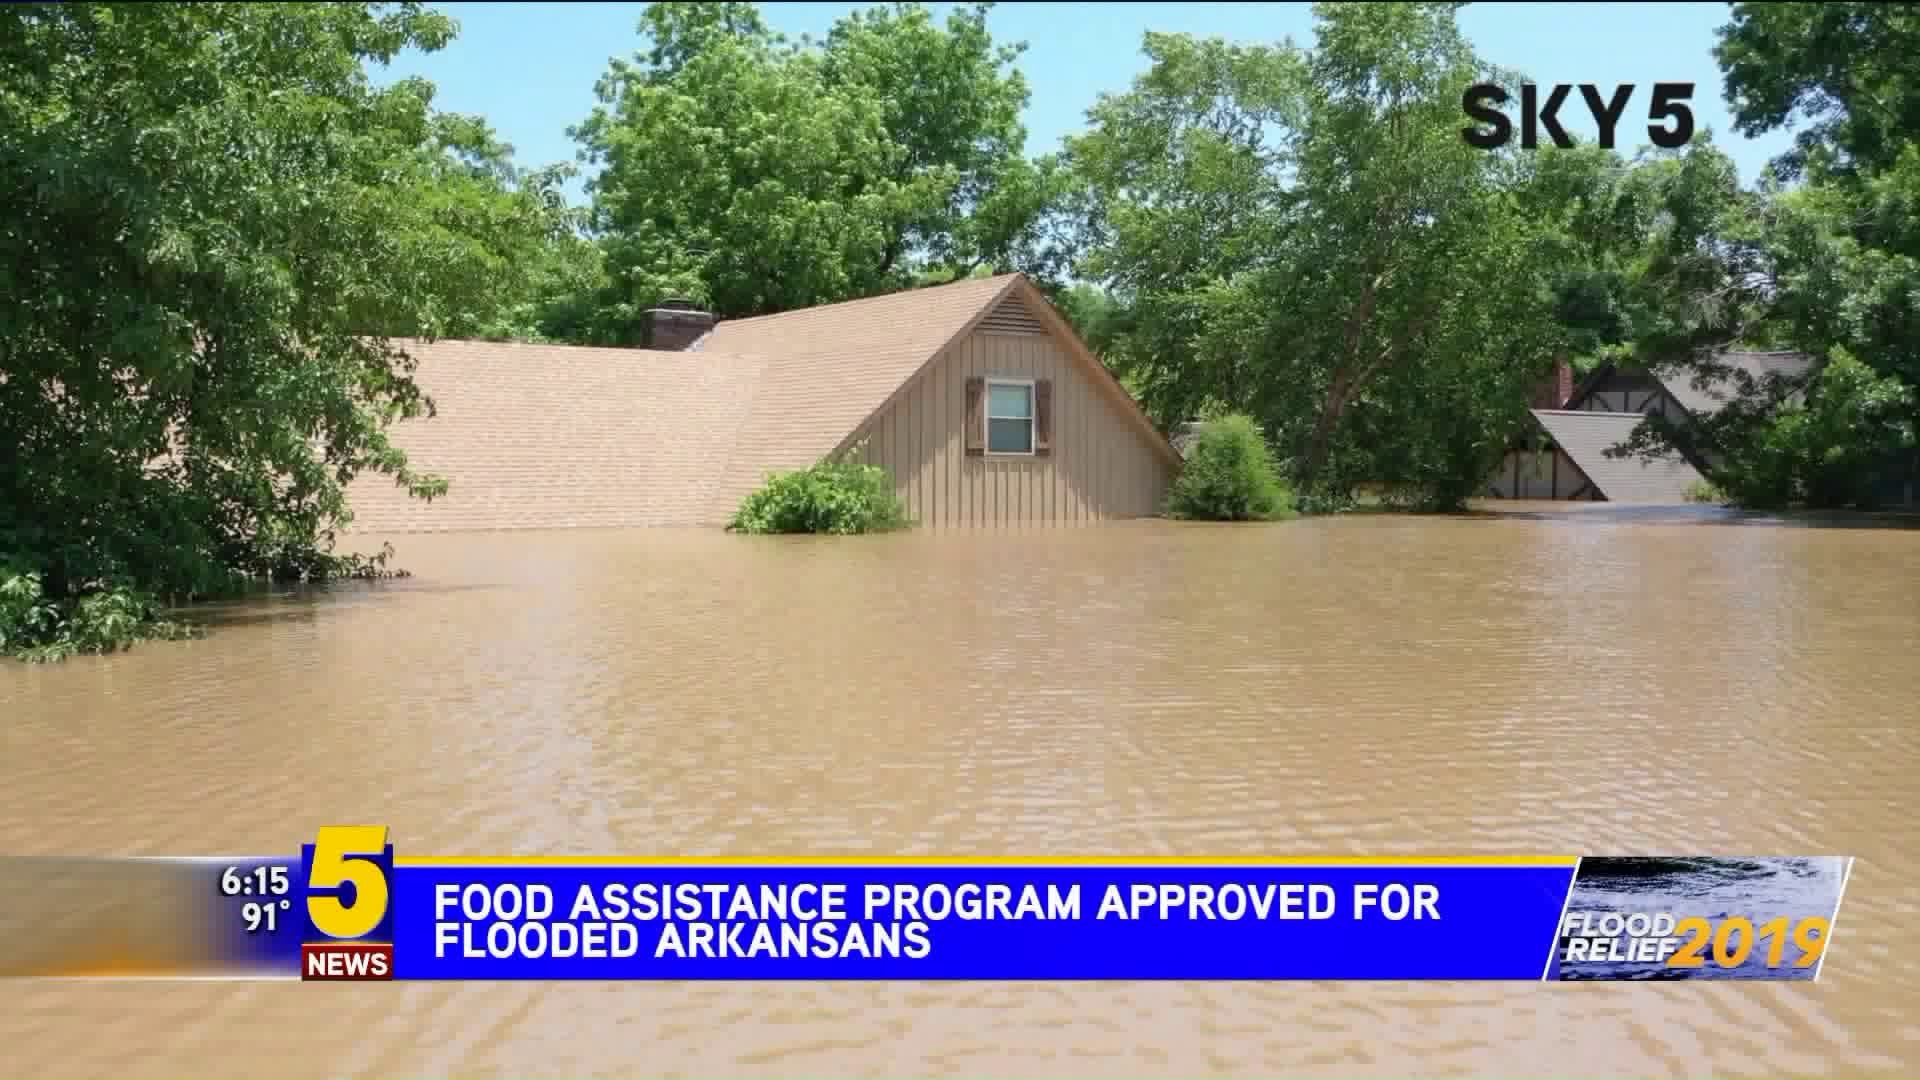 Food Assistance Program Approved for Flooded Arkansans